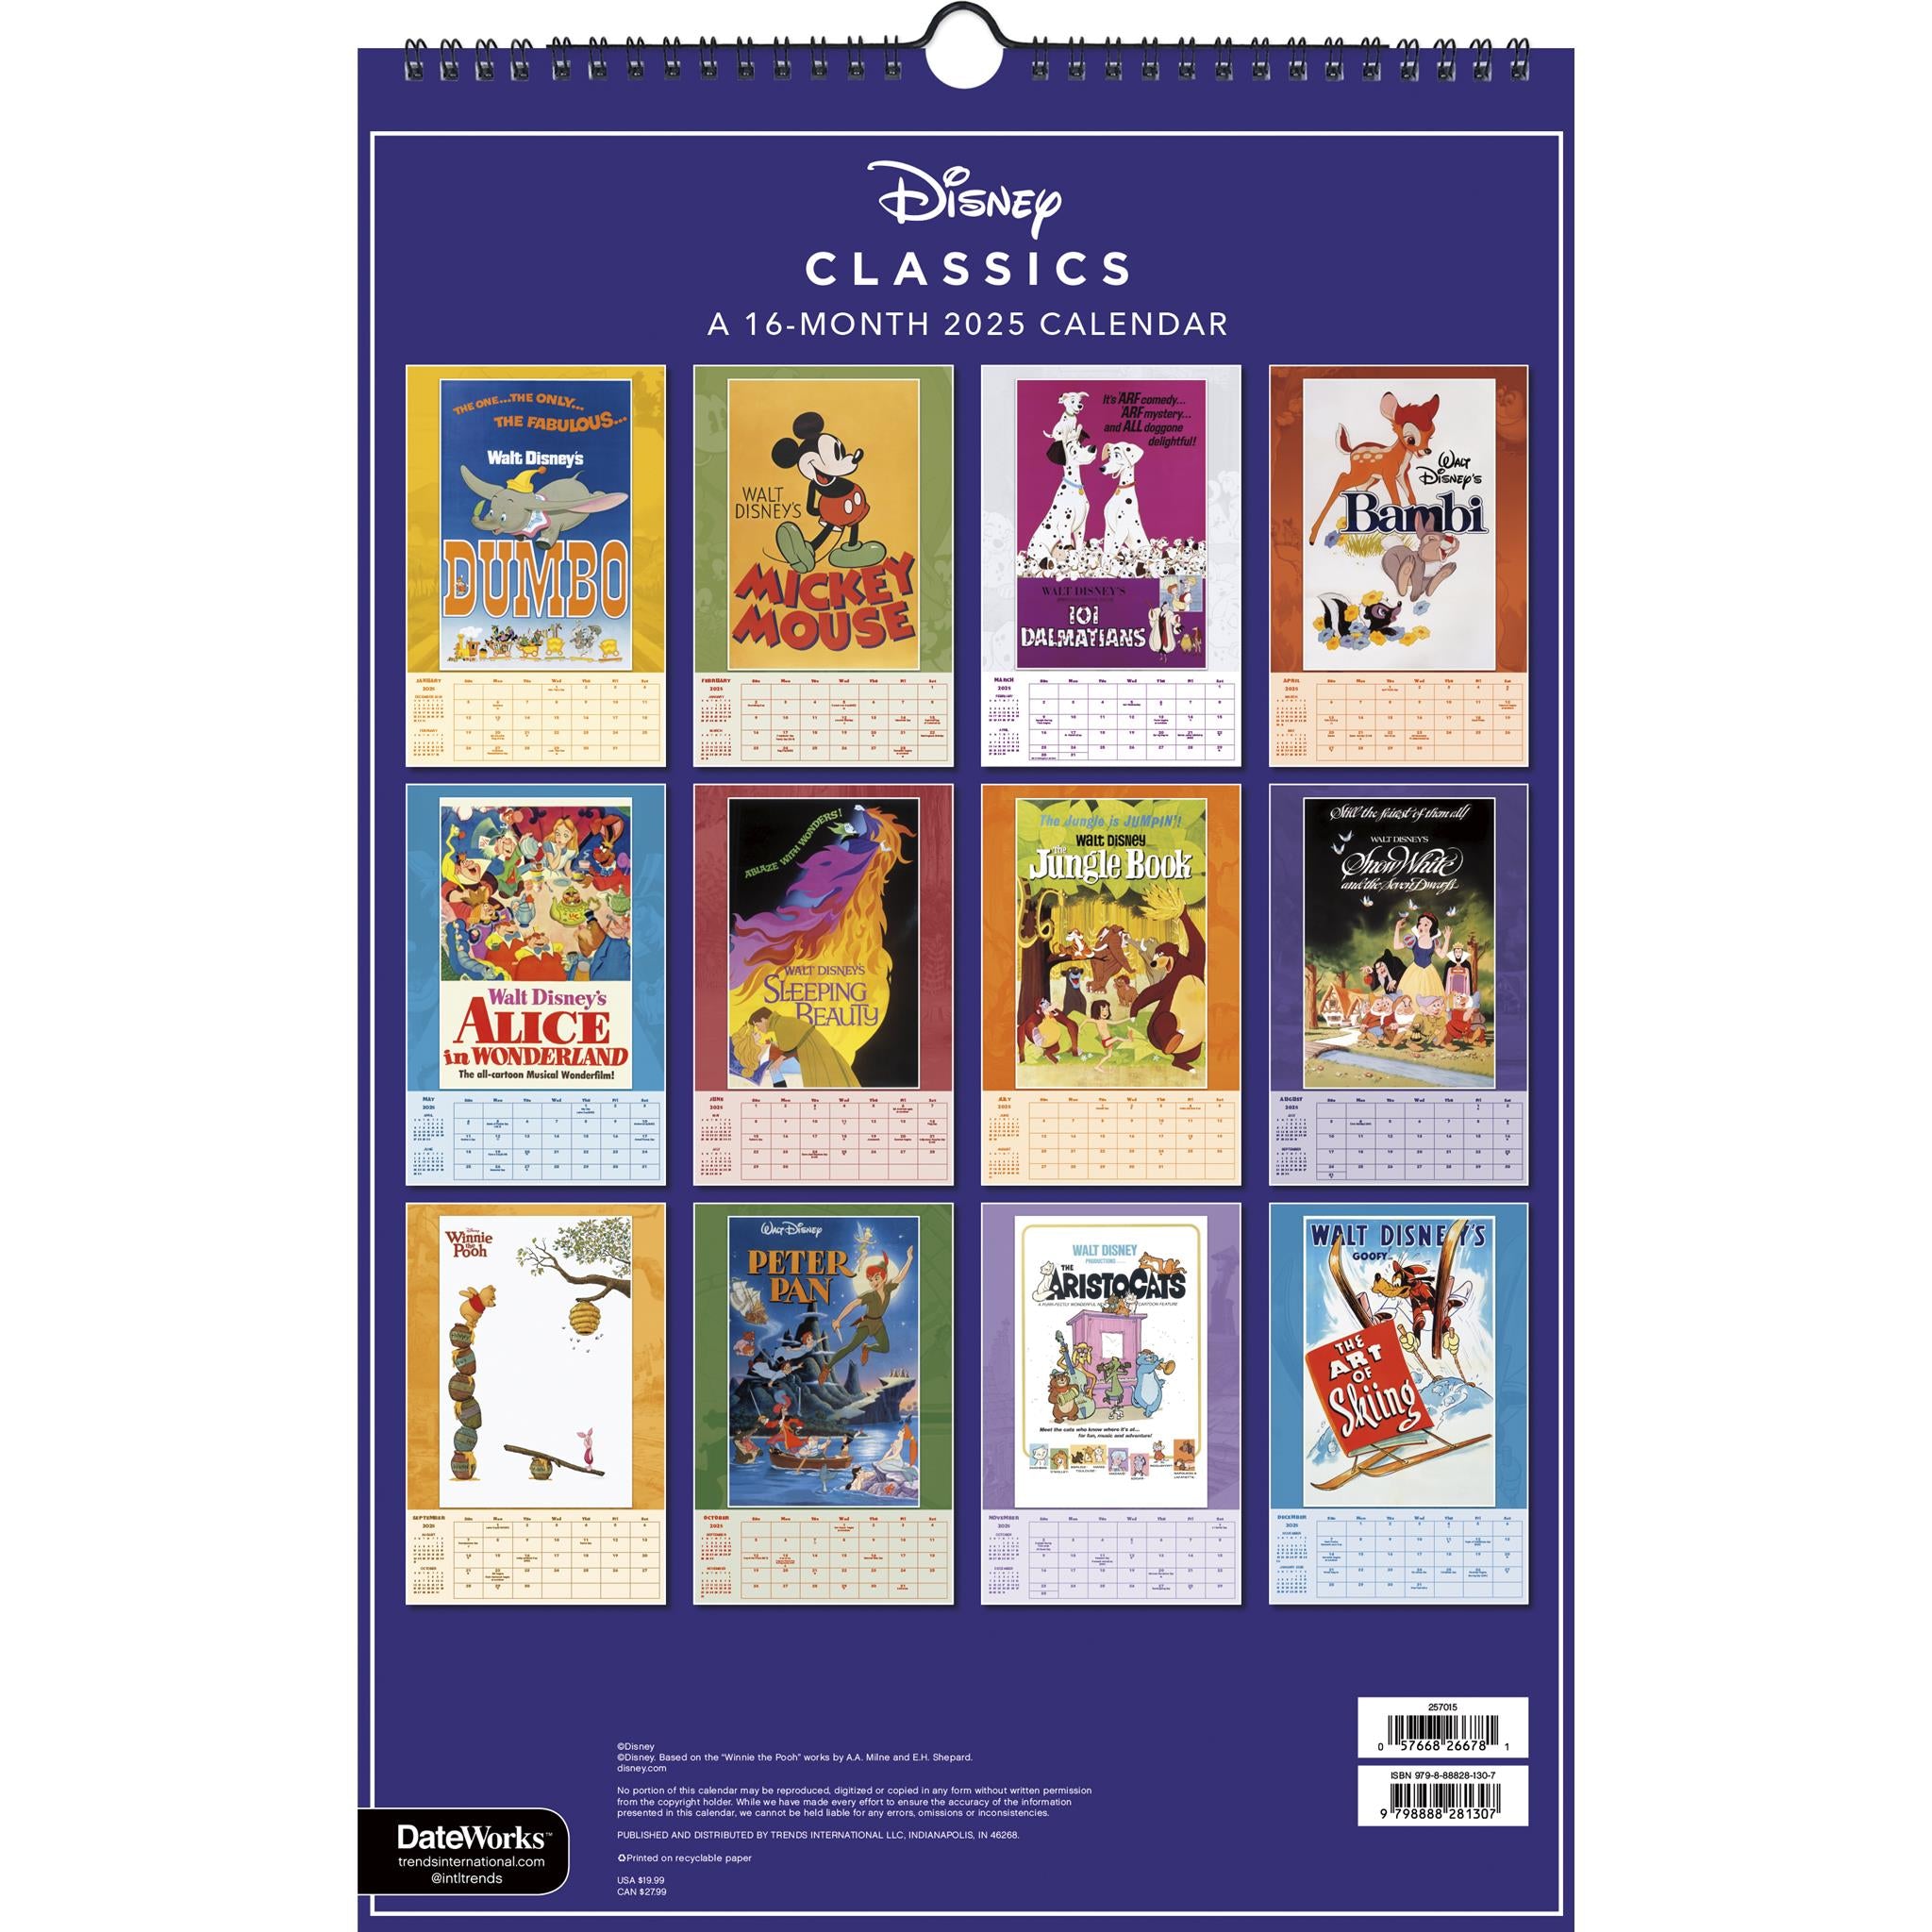 Disney Classics Poster 2025 Calendar